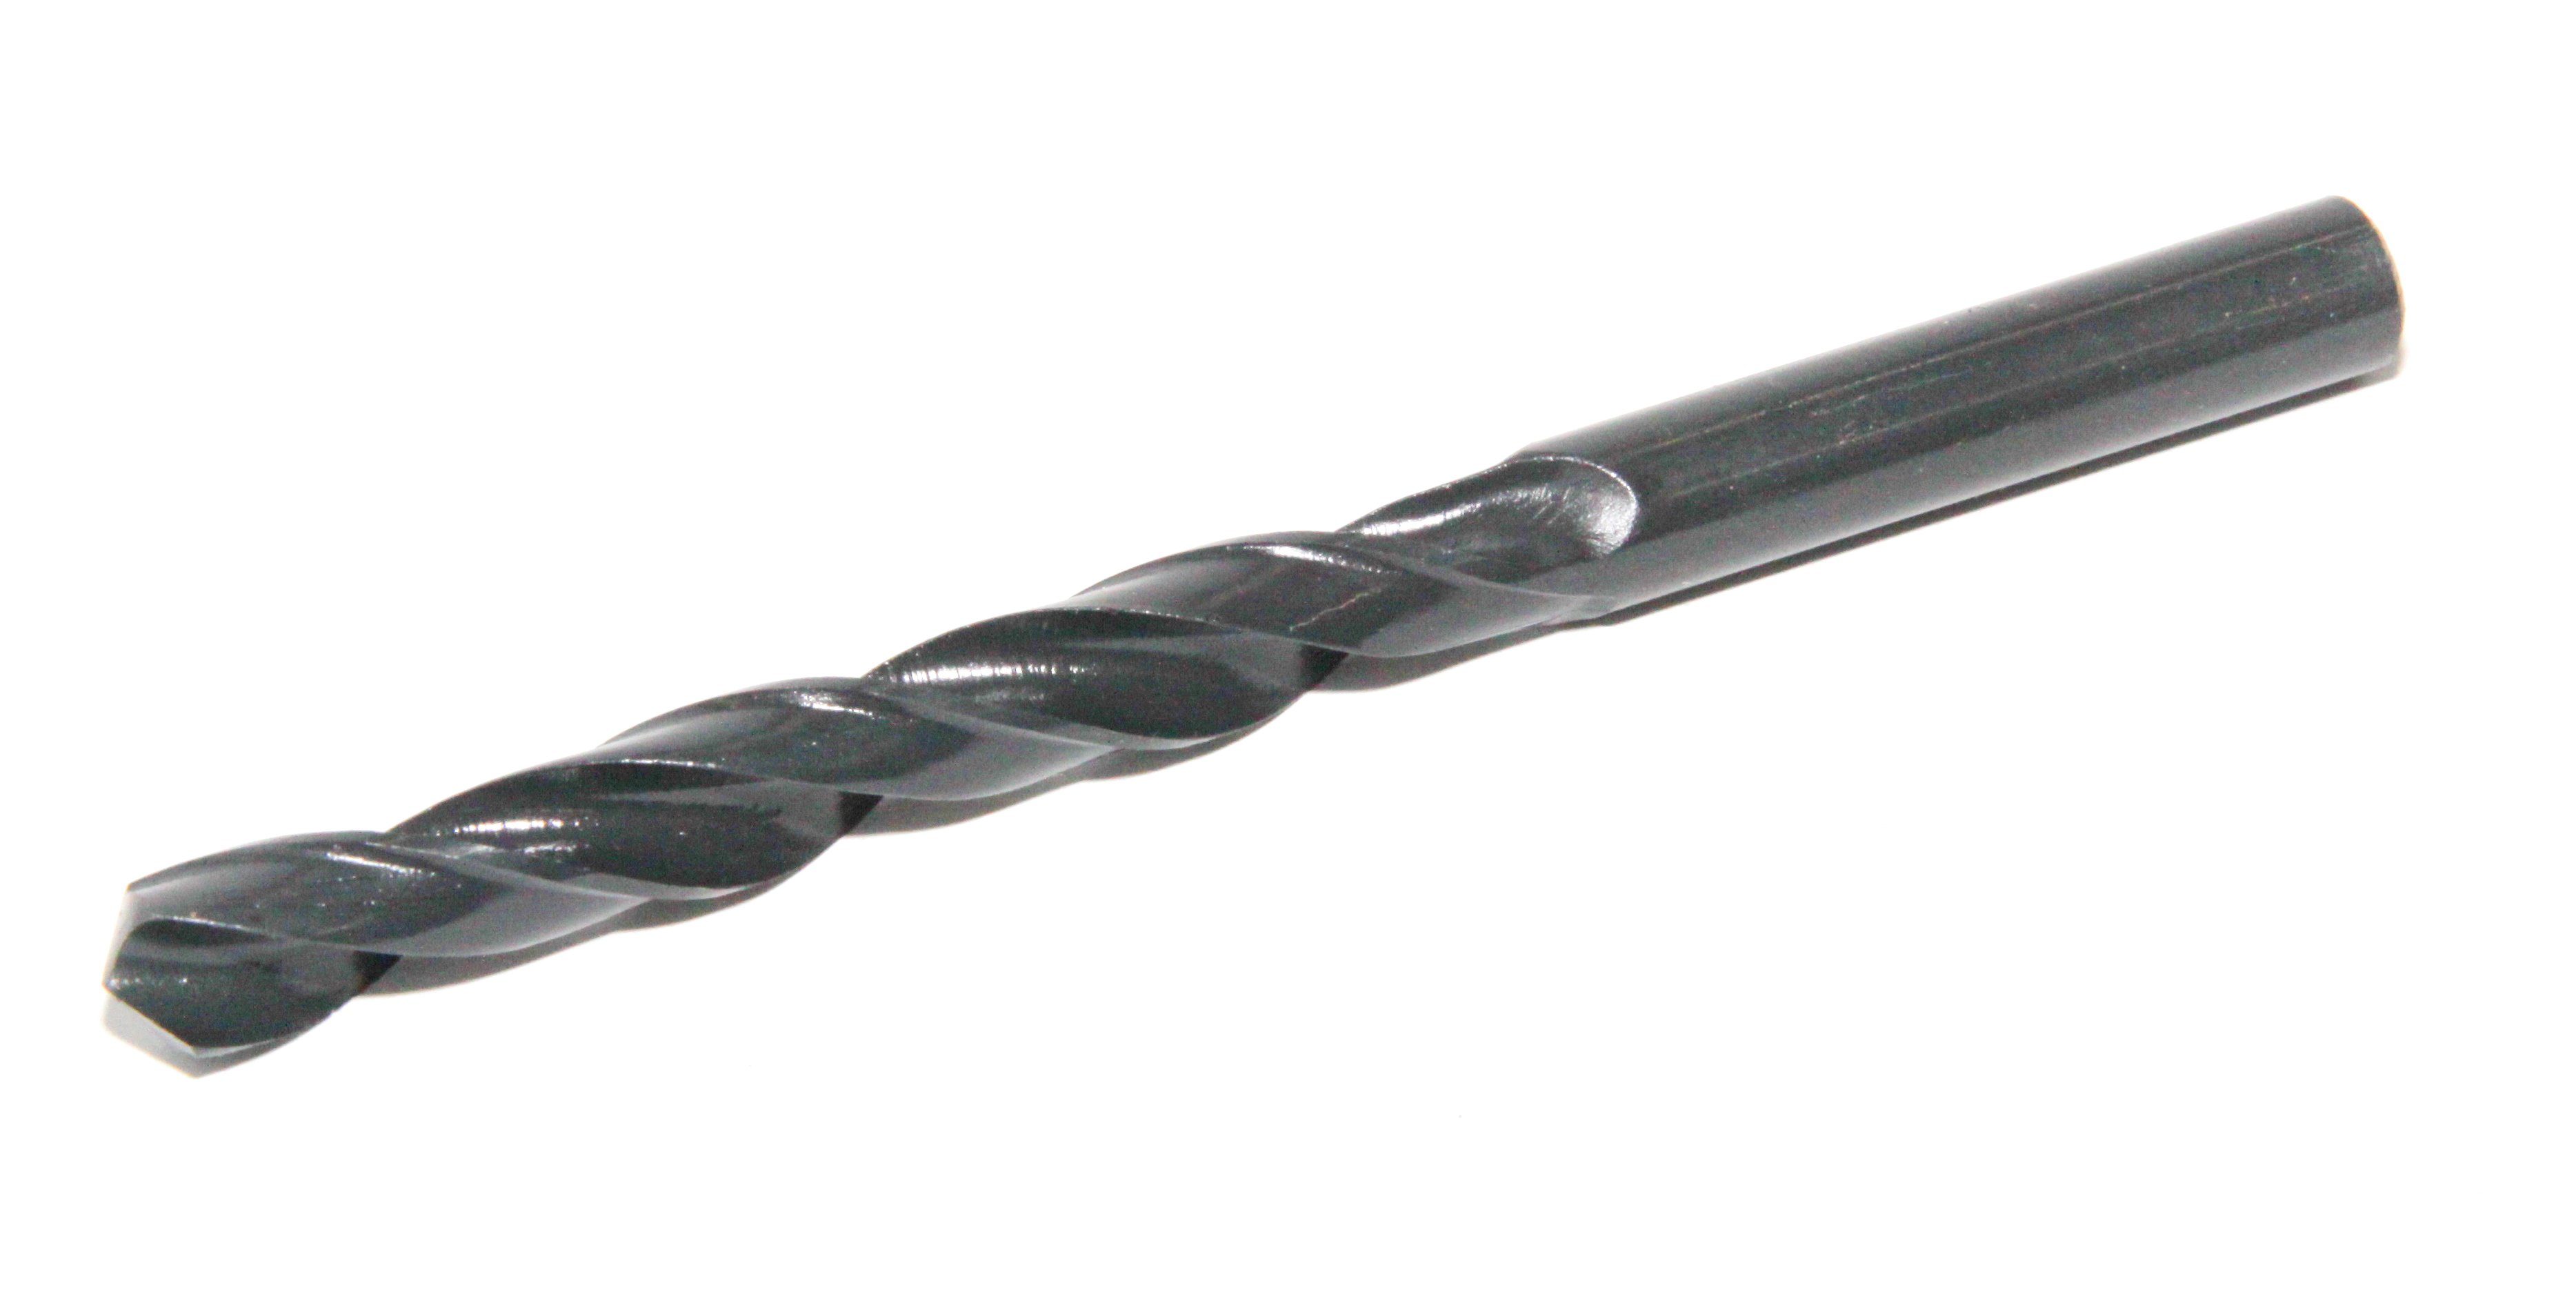 PeTools Metallbohrer Spiralbohrer 230tlg HSS-R, 1-13mm Qualität Stahl-Bohrer, Stahlbohrer (230-tlg), DIN338, Metallbohrer HSS-R